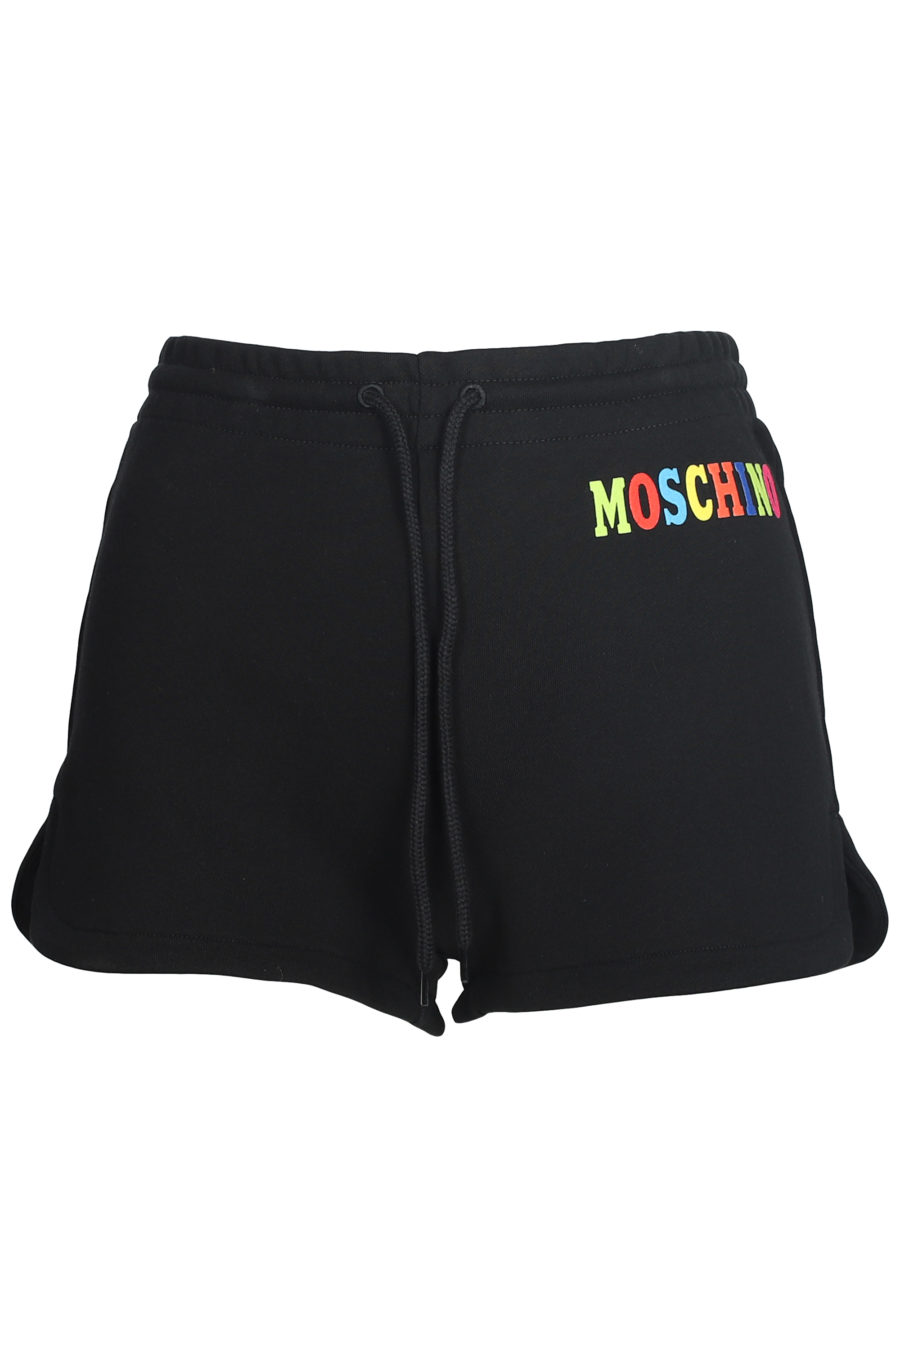 Pantalón corto negro con logo de colores - IMG 5601